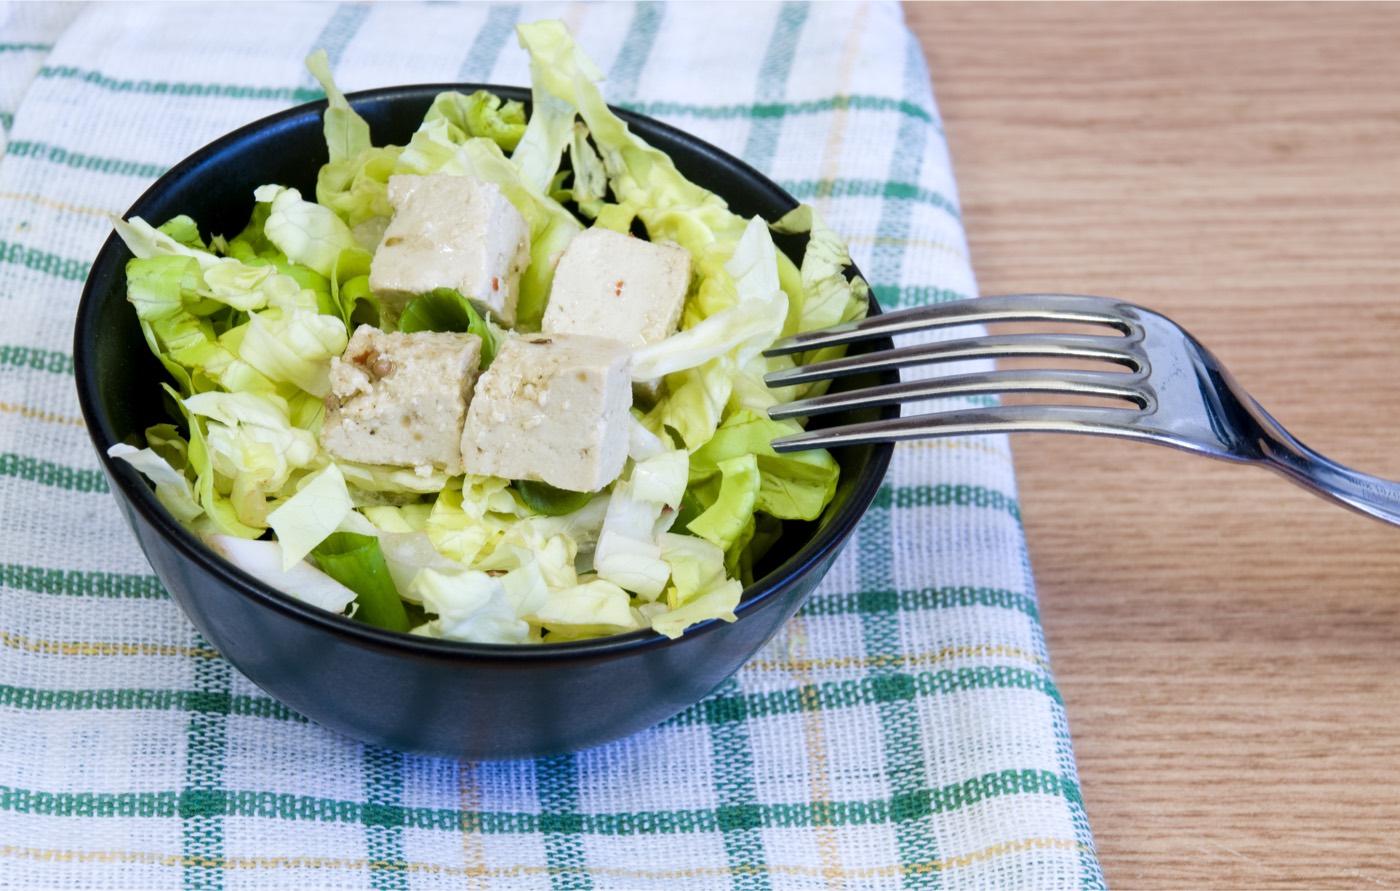 Scopri la ricetta semplice per preparare Insalata mista vegana con tofu e rucola fresca